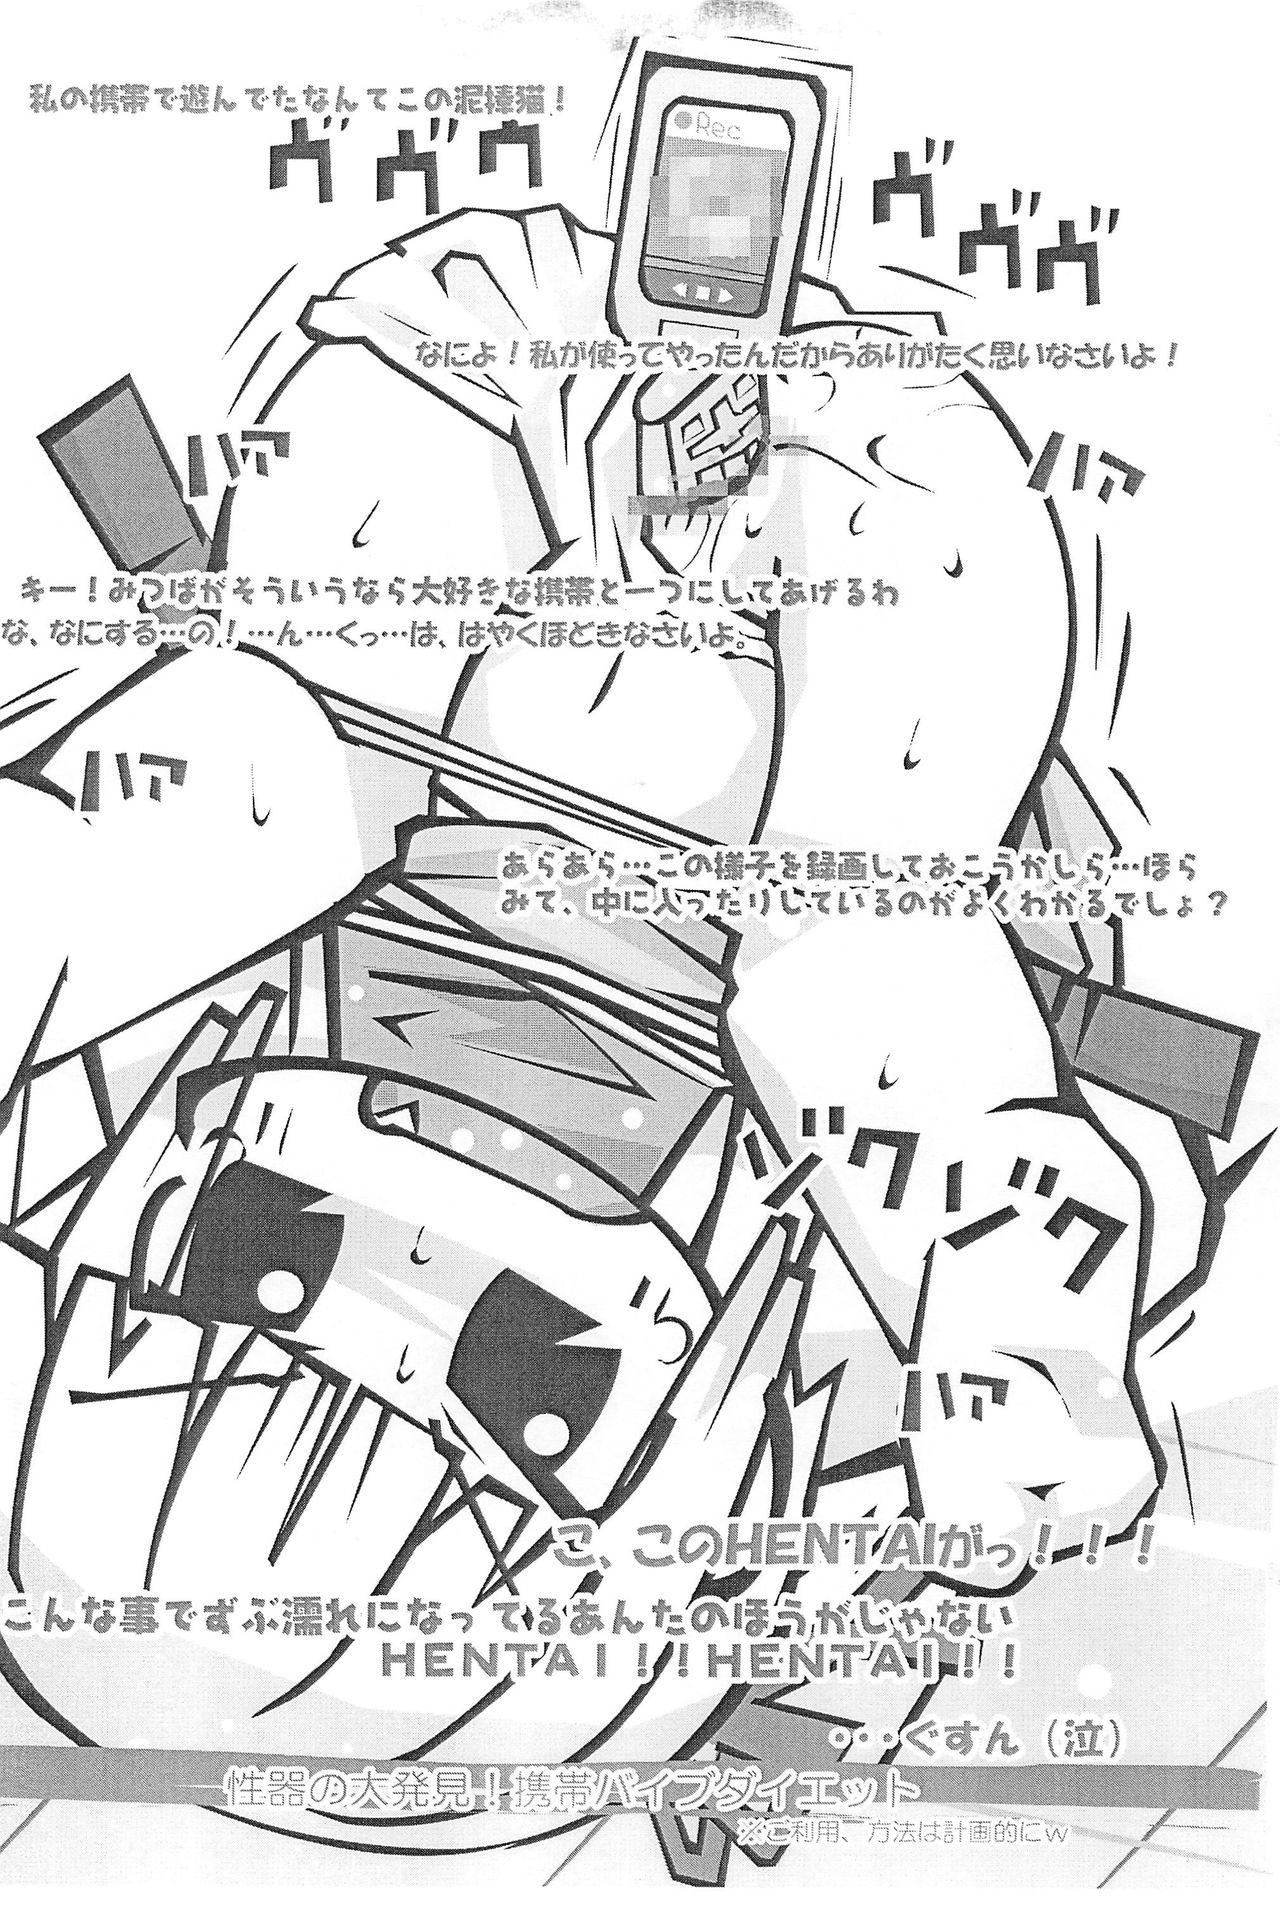 Teenager Honiki-Hentai 6 no 3 - Mitsudomoe Storyline - Page 9